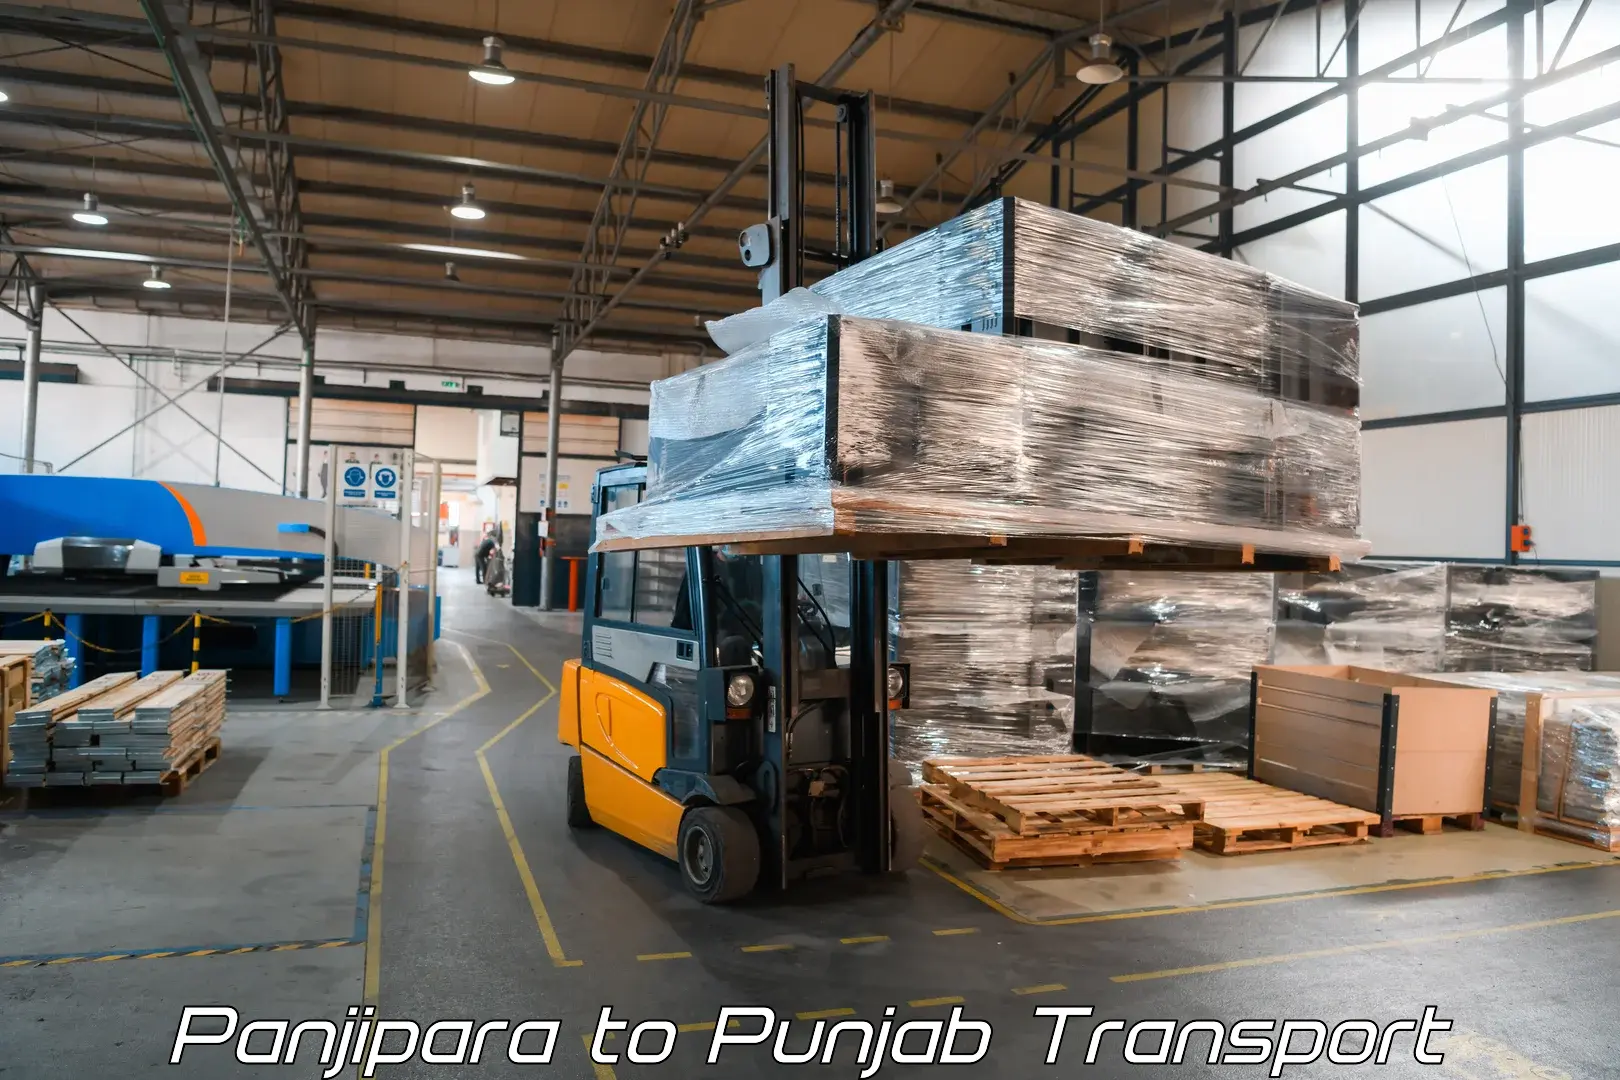 Logistics transportation services Panjipara to Zirakpur